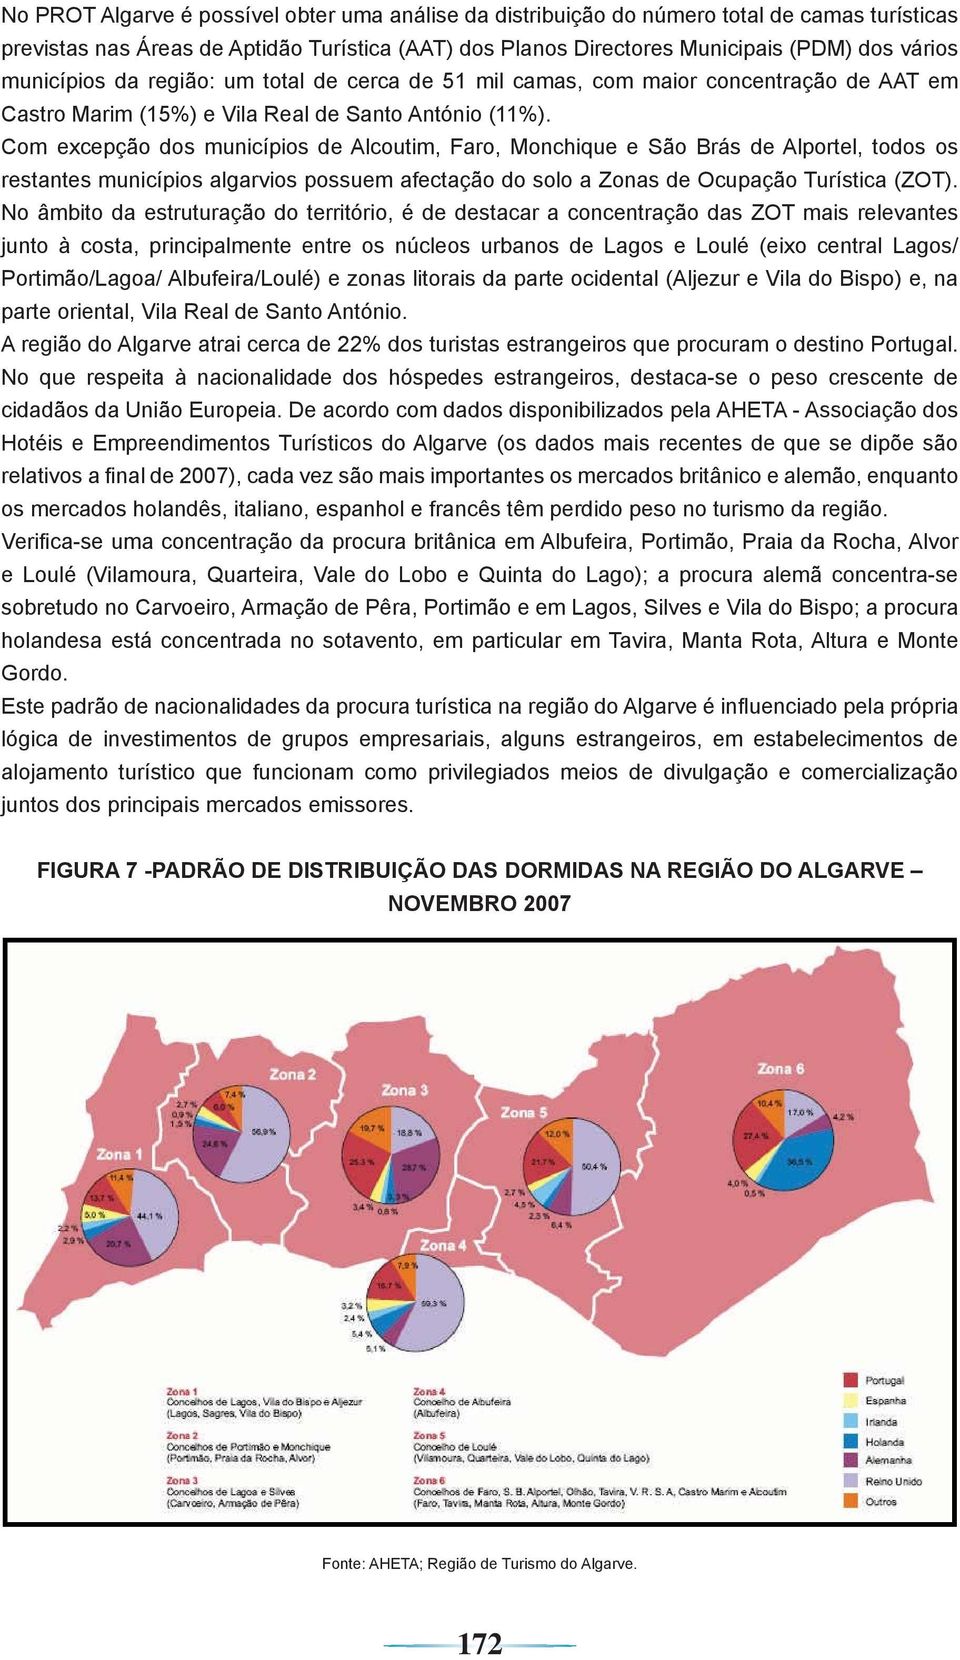 Com excepção dos municípios de Alcoutim, Faro, Monchique e São Brás de Alportel, todos os restantes municípios algarvios possuem afectação do solo a Zonas de Ocupação Turística (ZOT).